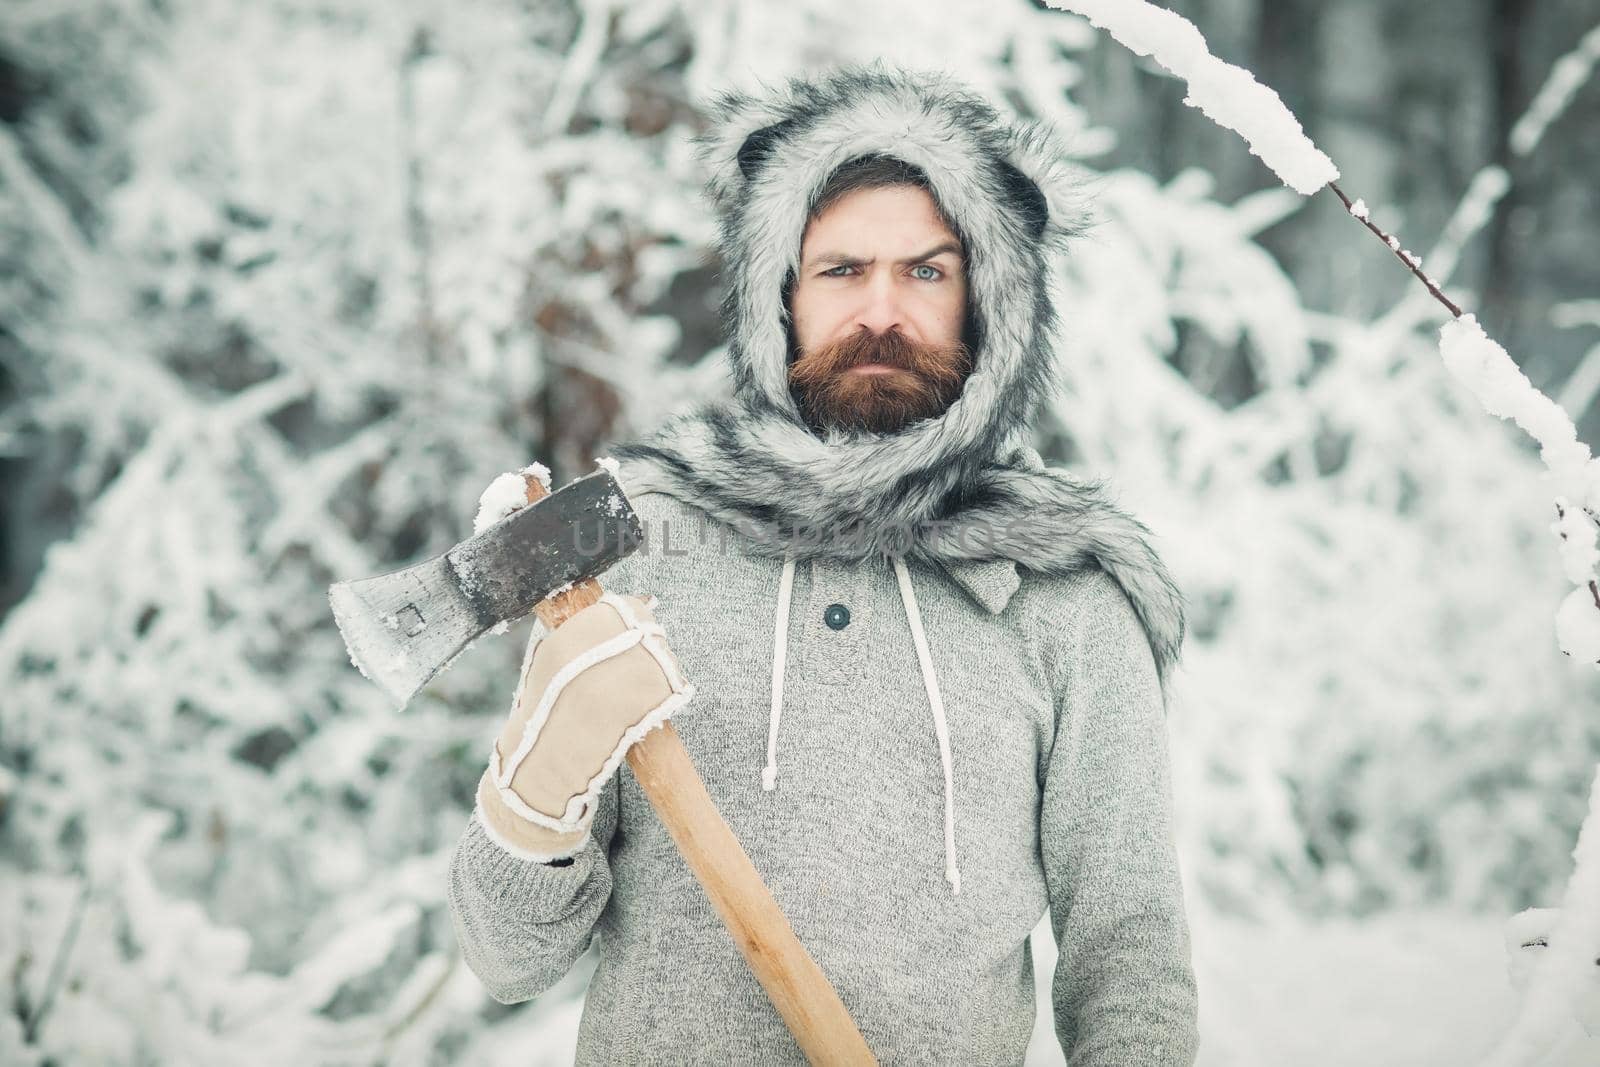 Winter bearded man lumberjack hold axe in snowy winter forest